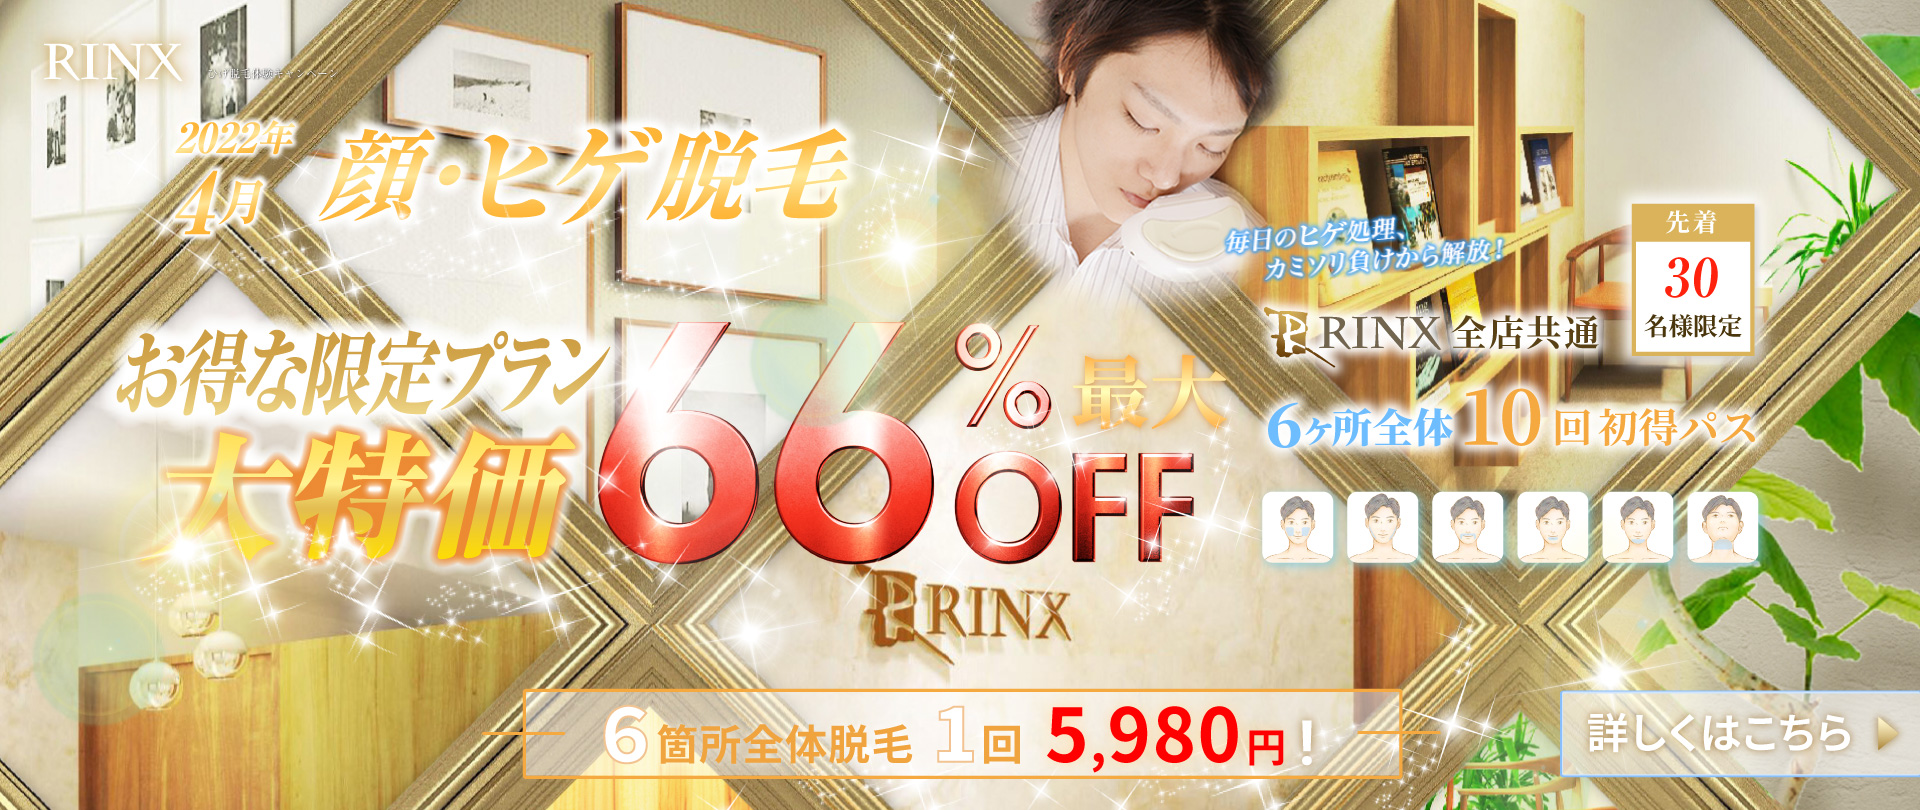 RINX 山口周南店の画像